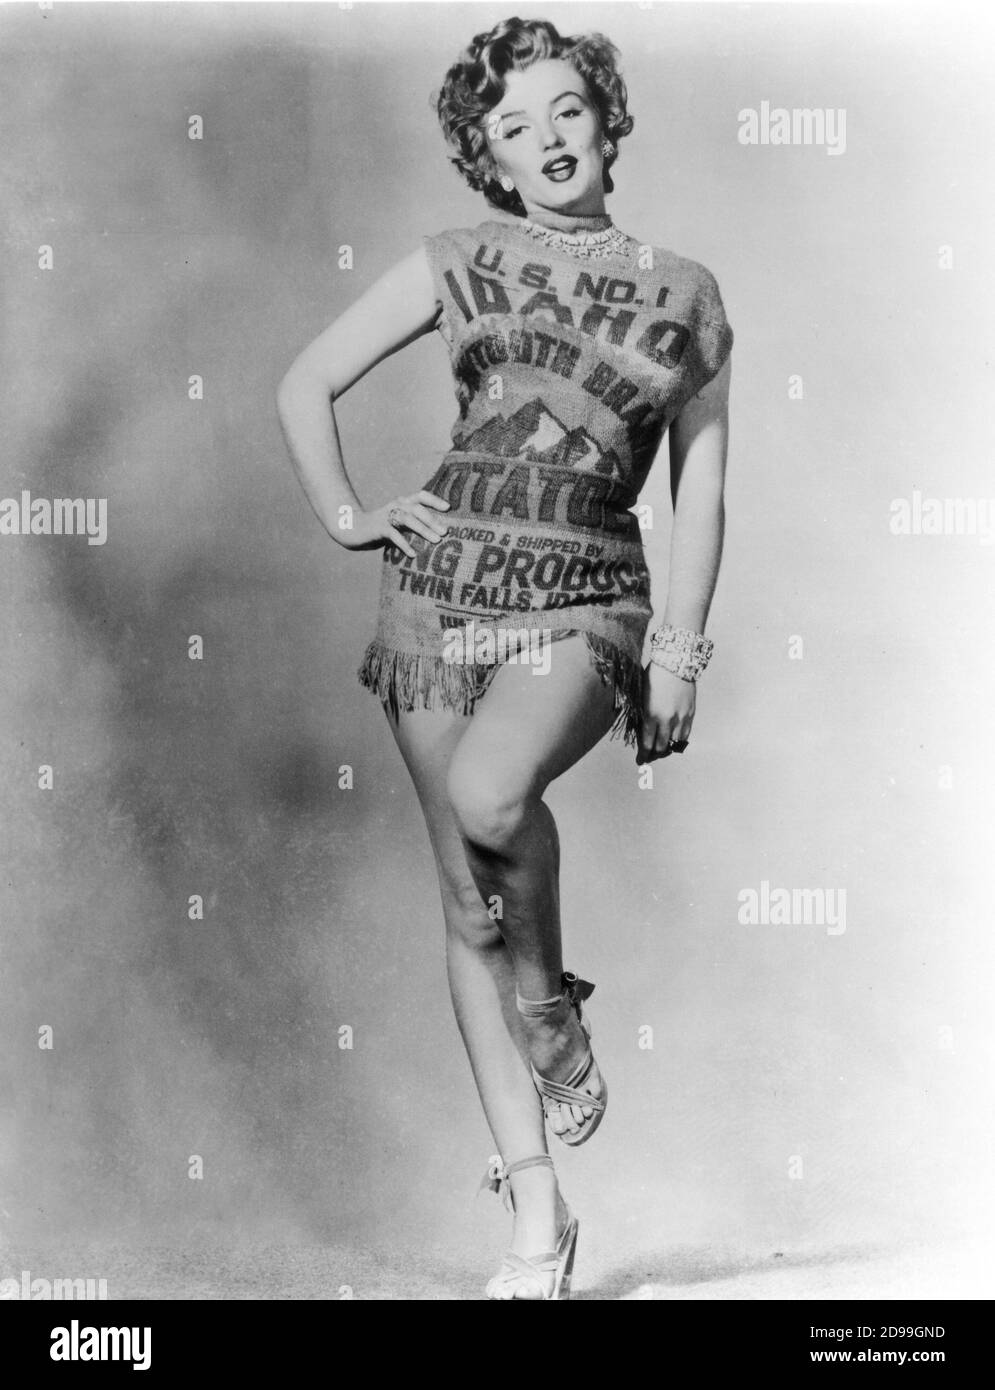 1951 , diciembre : MARILYN MONROE vestida con un saco de papa , siglo 20  Zorro aún pubblicidad - PIN UP - POSTURA LEGGY - SANDALS - SANDALI - JOYA -  JOYAS - JOYERÍA ---- Archivio GBB Fotografía de stock - Alamy